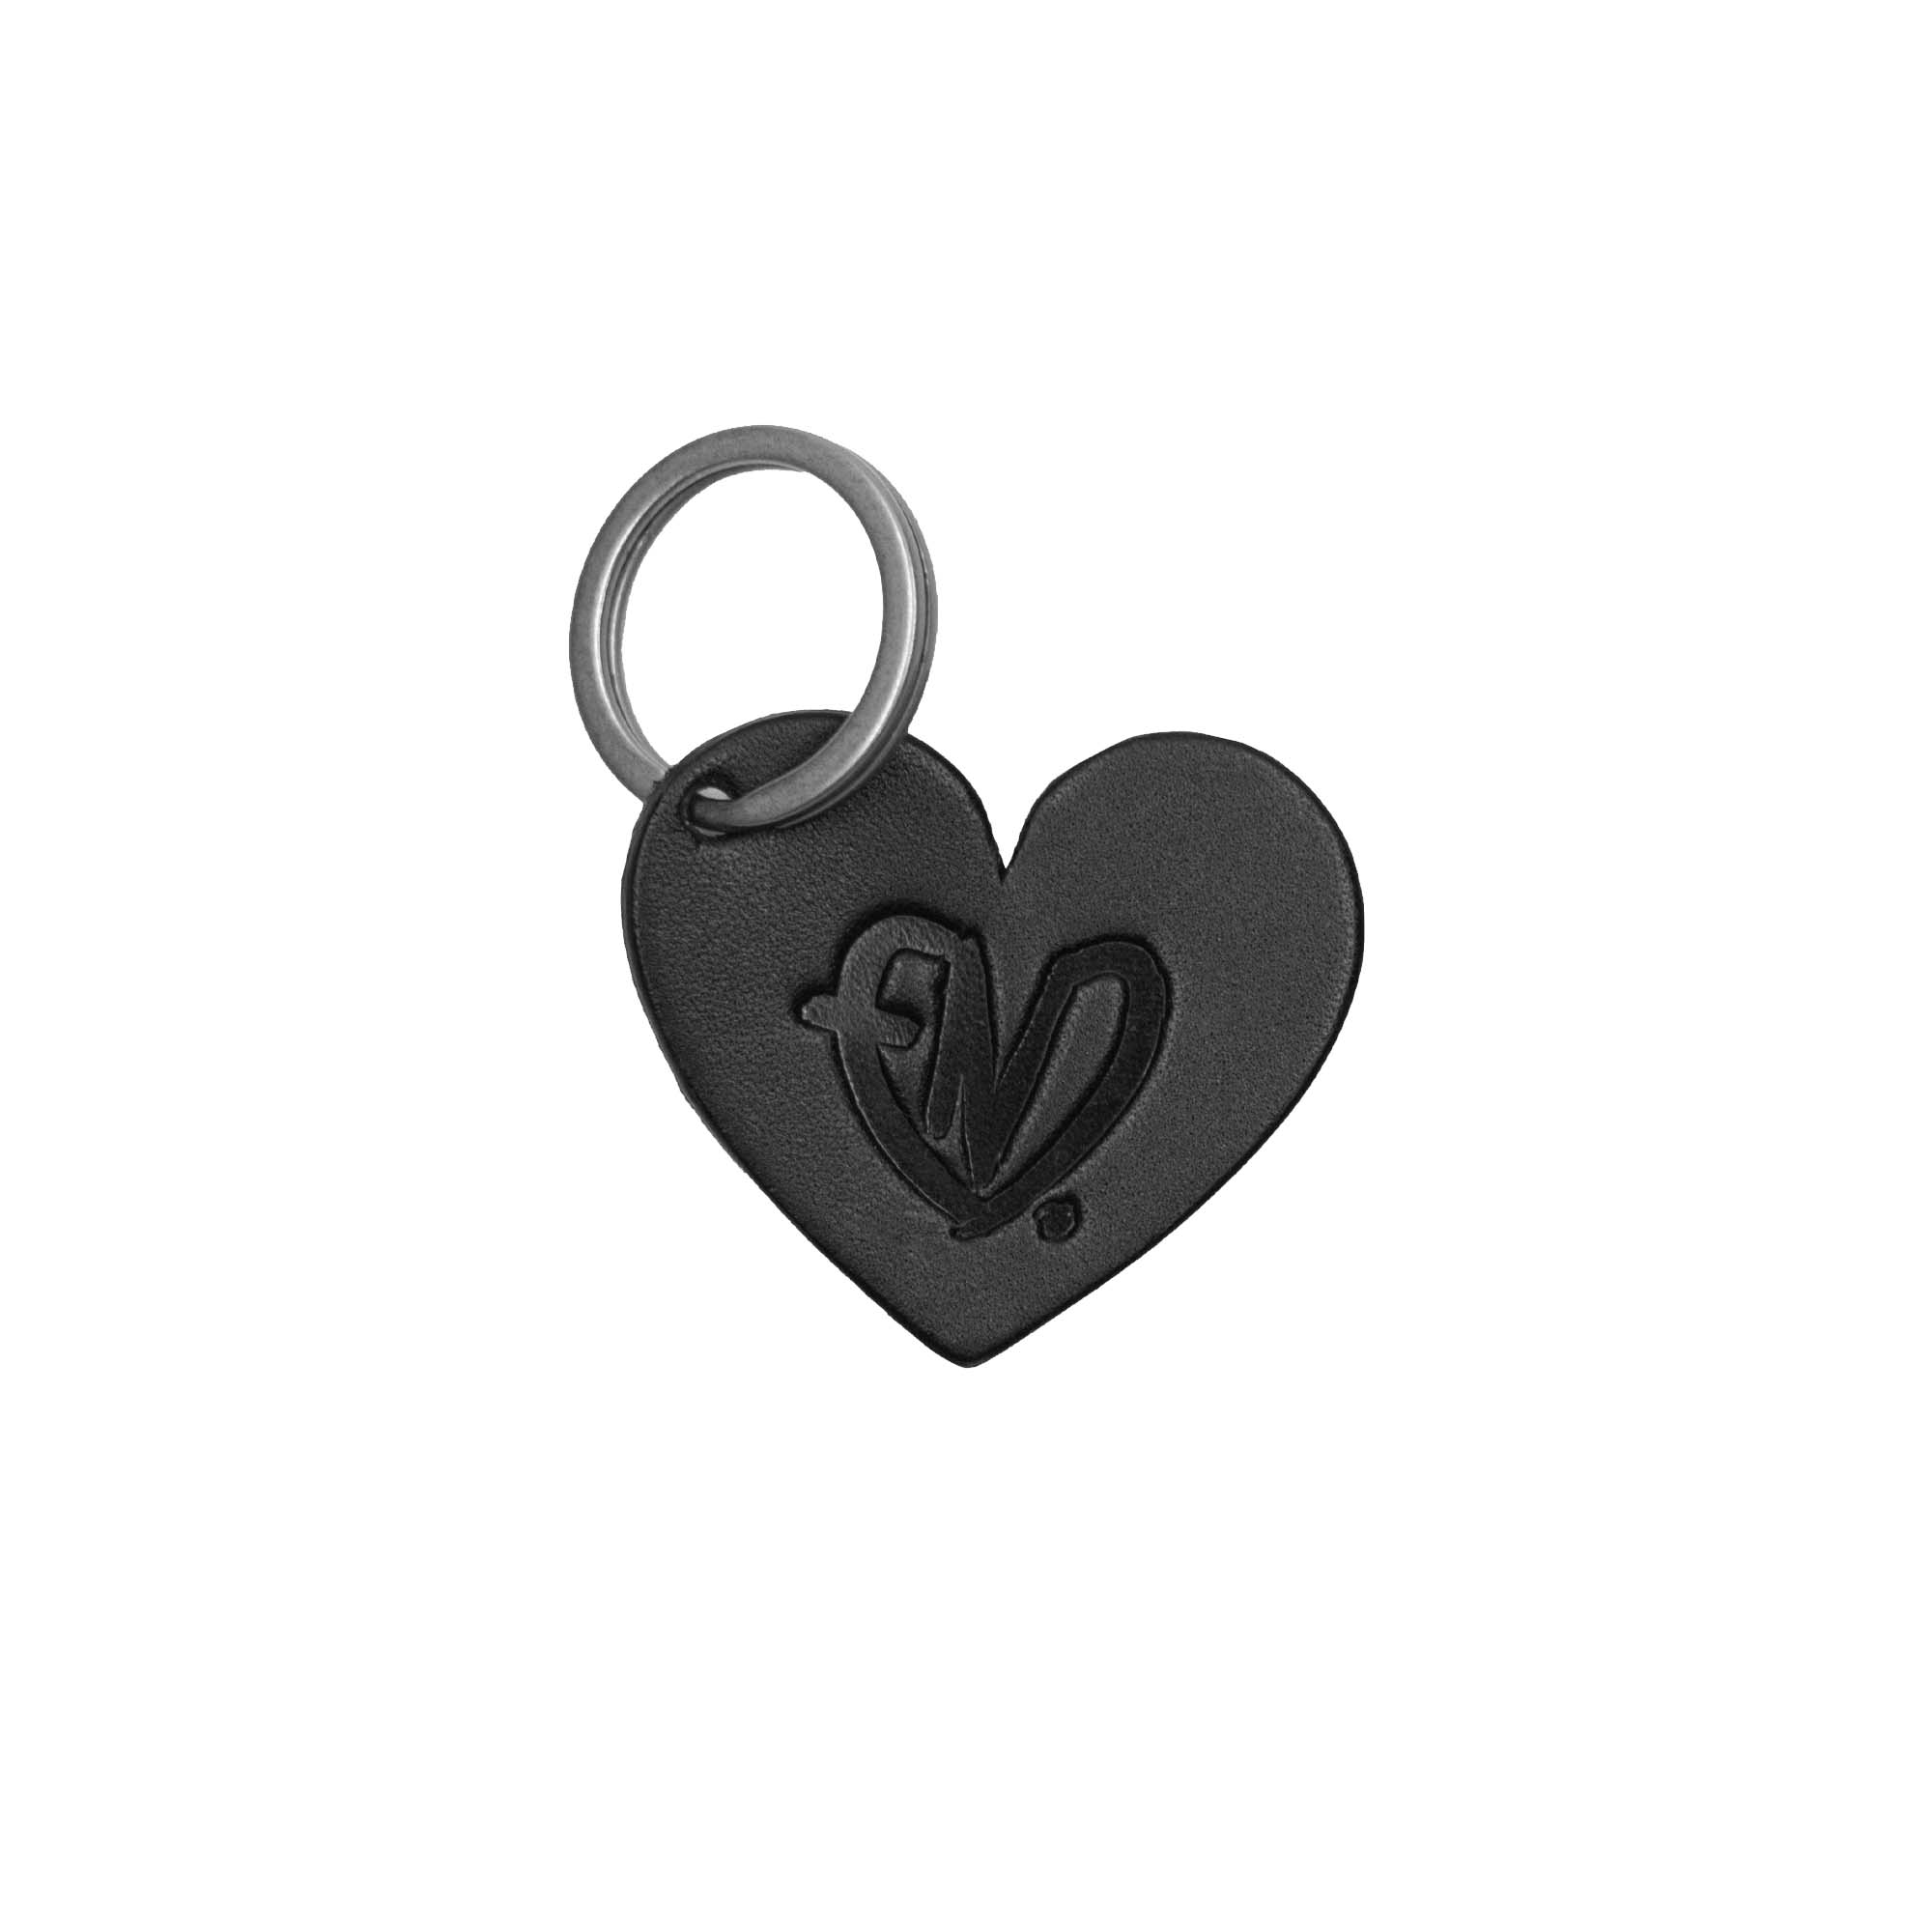 E.N.D. Heart Skinny Wallet + Keychain